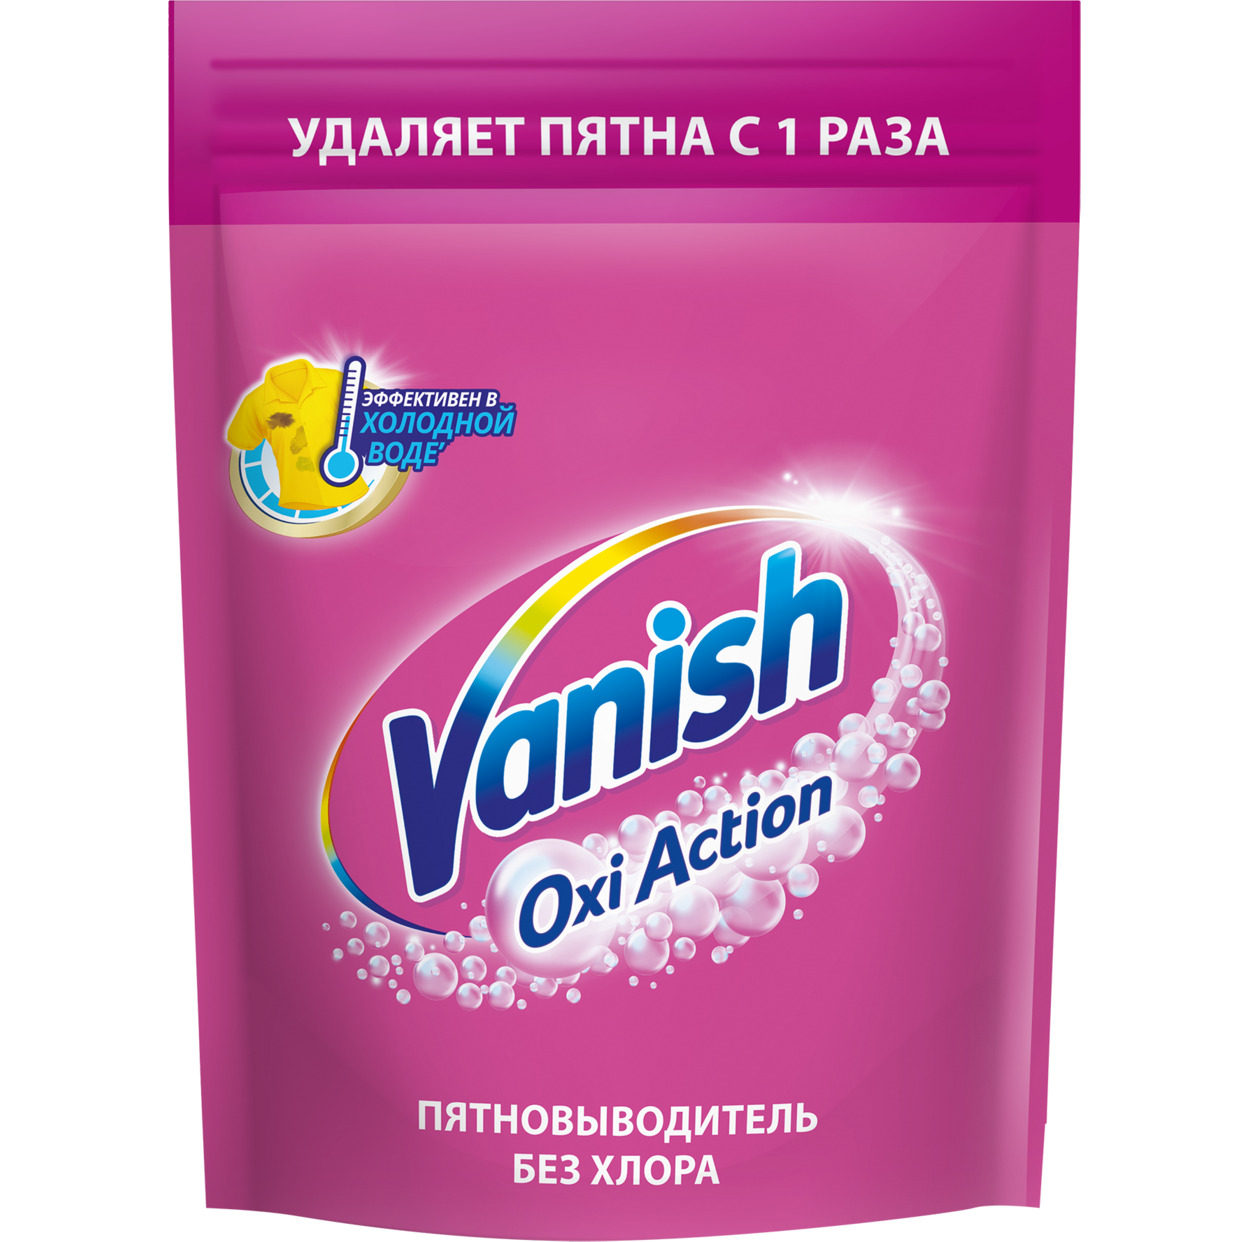 Пятновыводитель для тканей порошкообразный "Vanish Oxi Action" 500 г по акции в Пятерочке